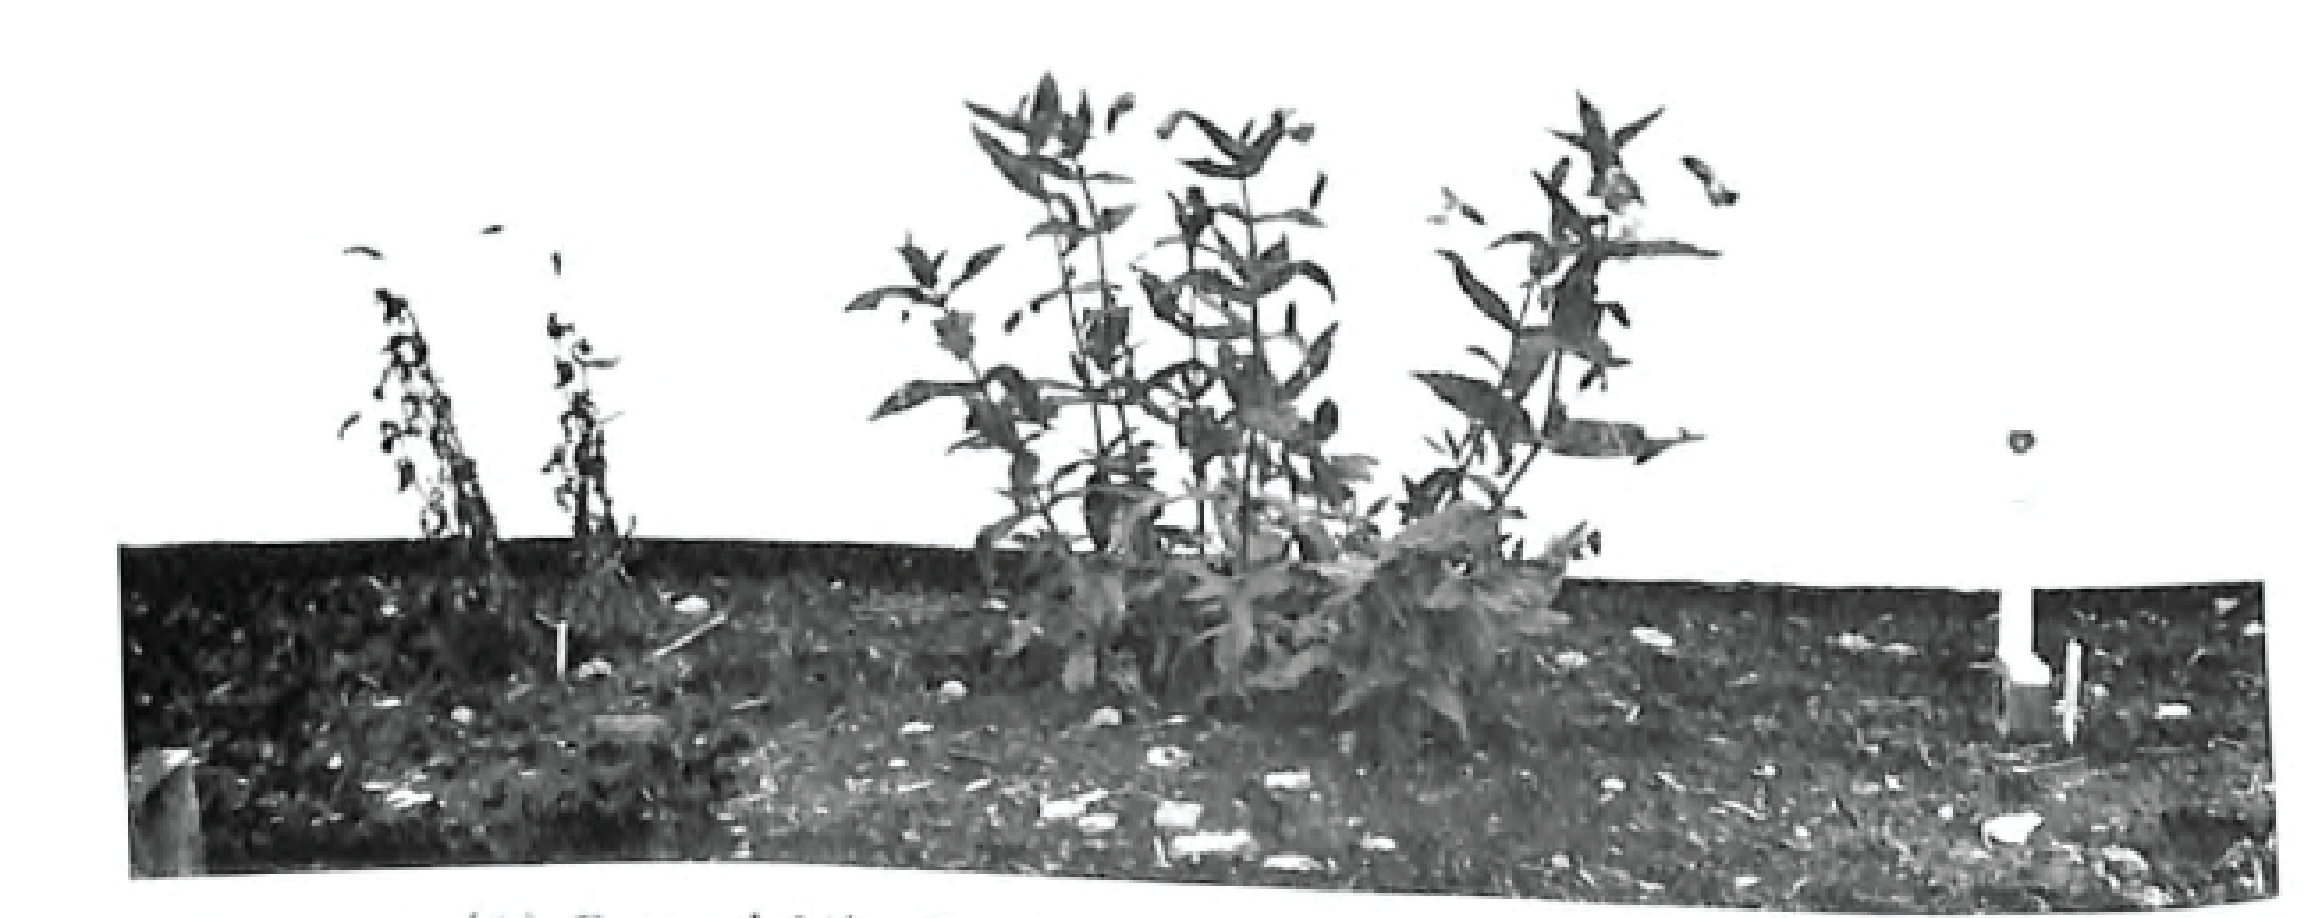 1967: Hybrid vigor between M. lewisii and M. cardinalis